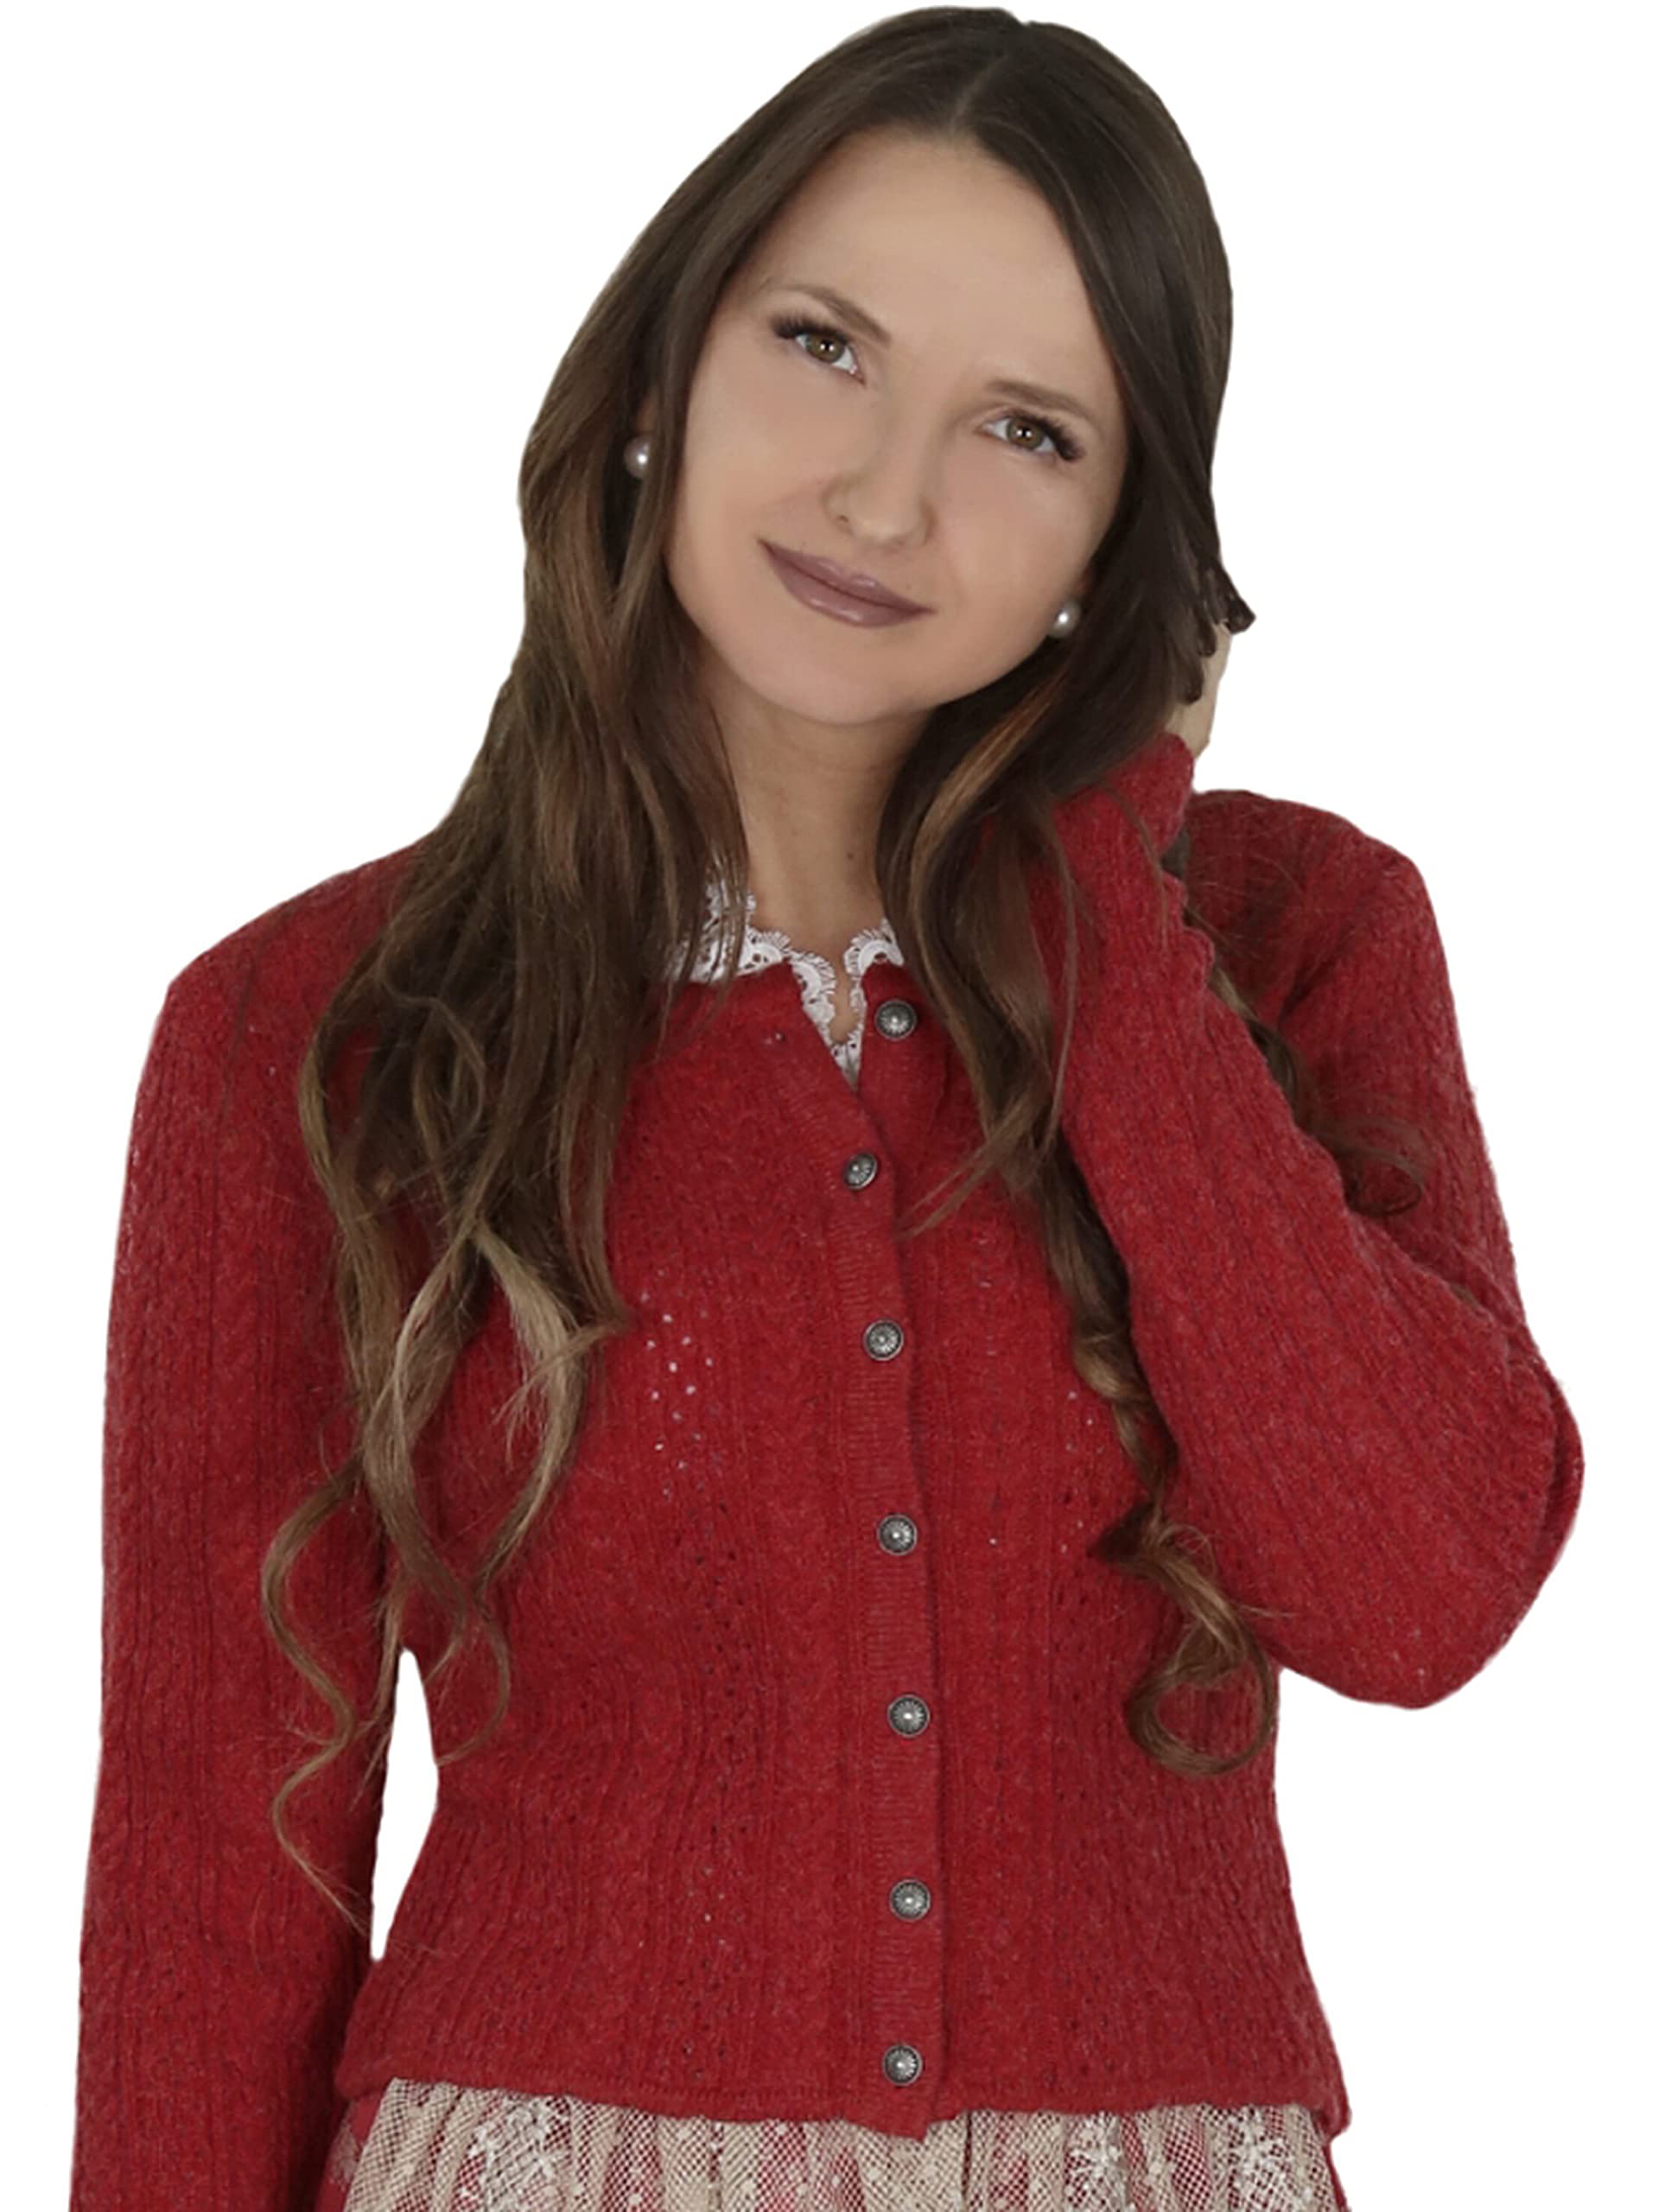 Almbock Strickjacke Trachten für Damen | gestrickte Trachten Jacke rot mit Knöpfen | Trachtenweste Damen Strick - Trachtenjacke Strick Damen 40